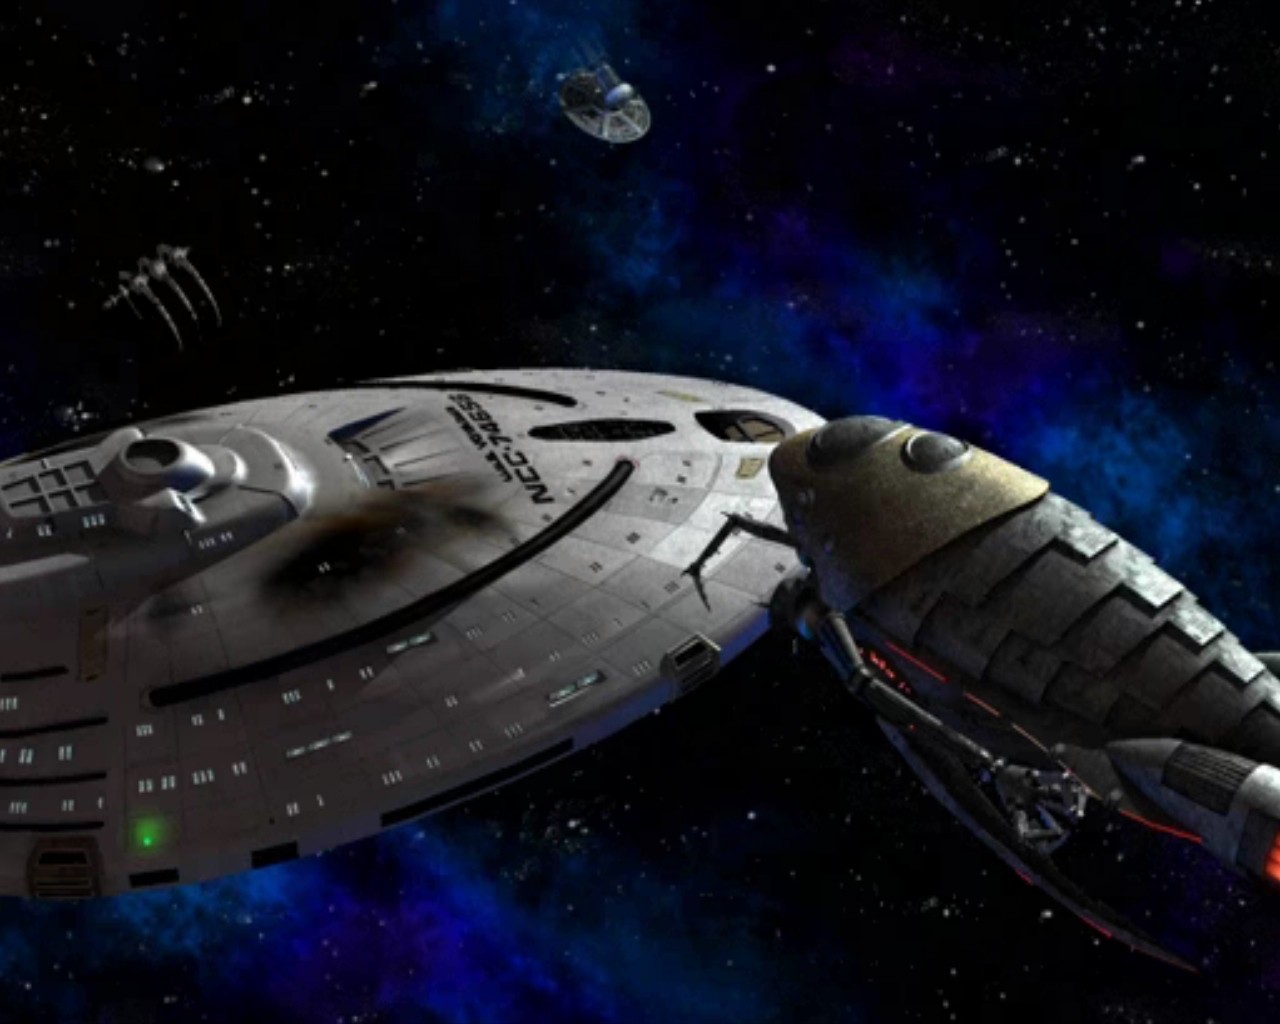 download Star Trek: Voyager Elite Force